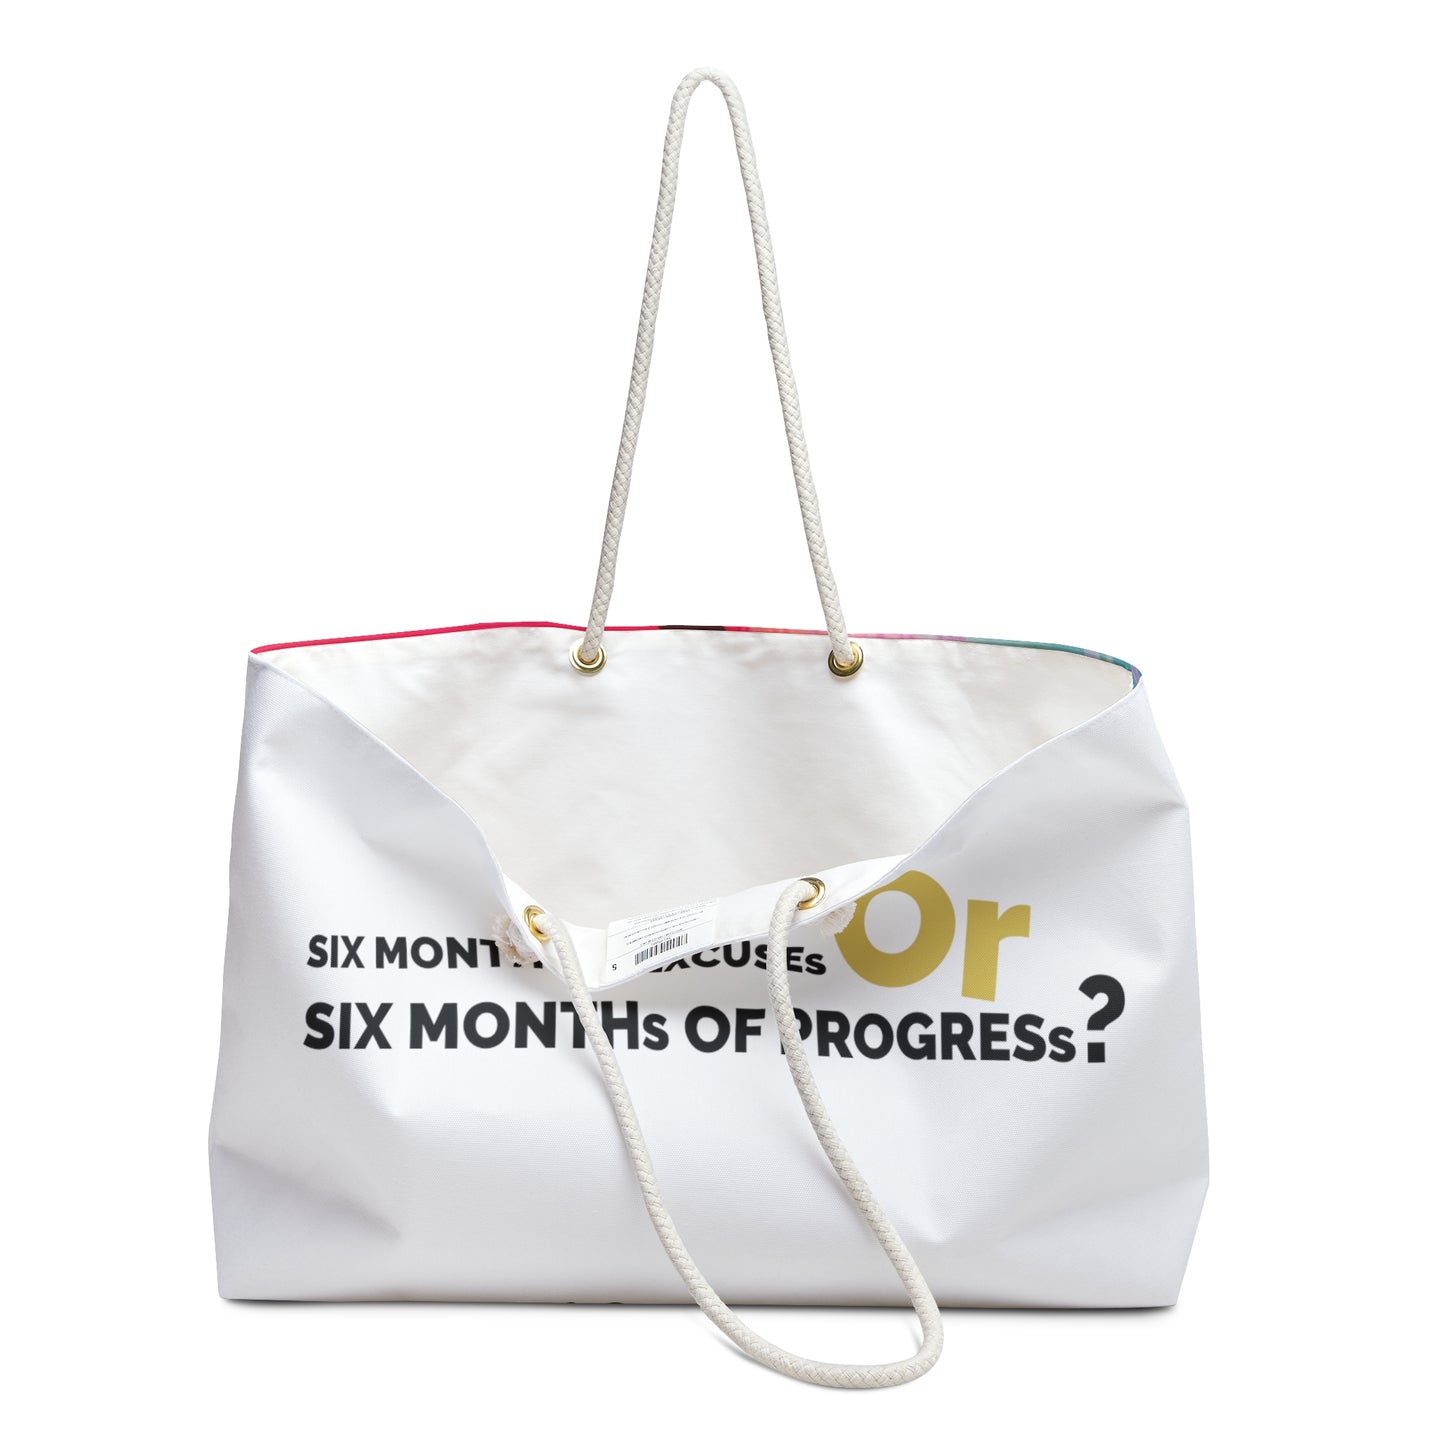 Weekender Bag | Excuses or Progress?